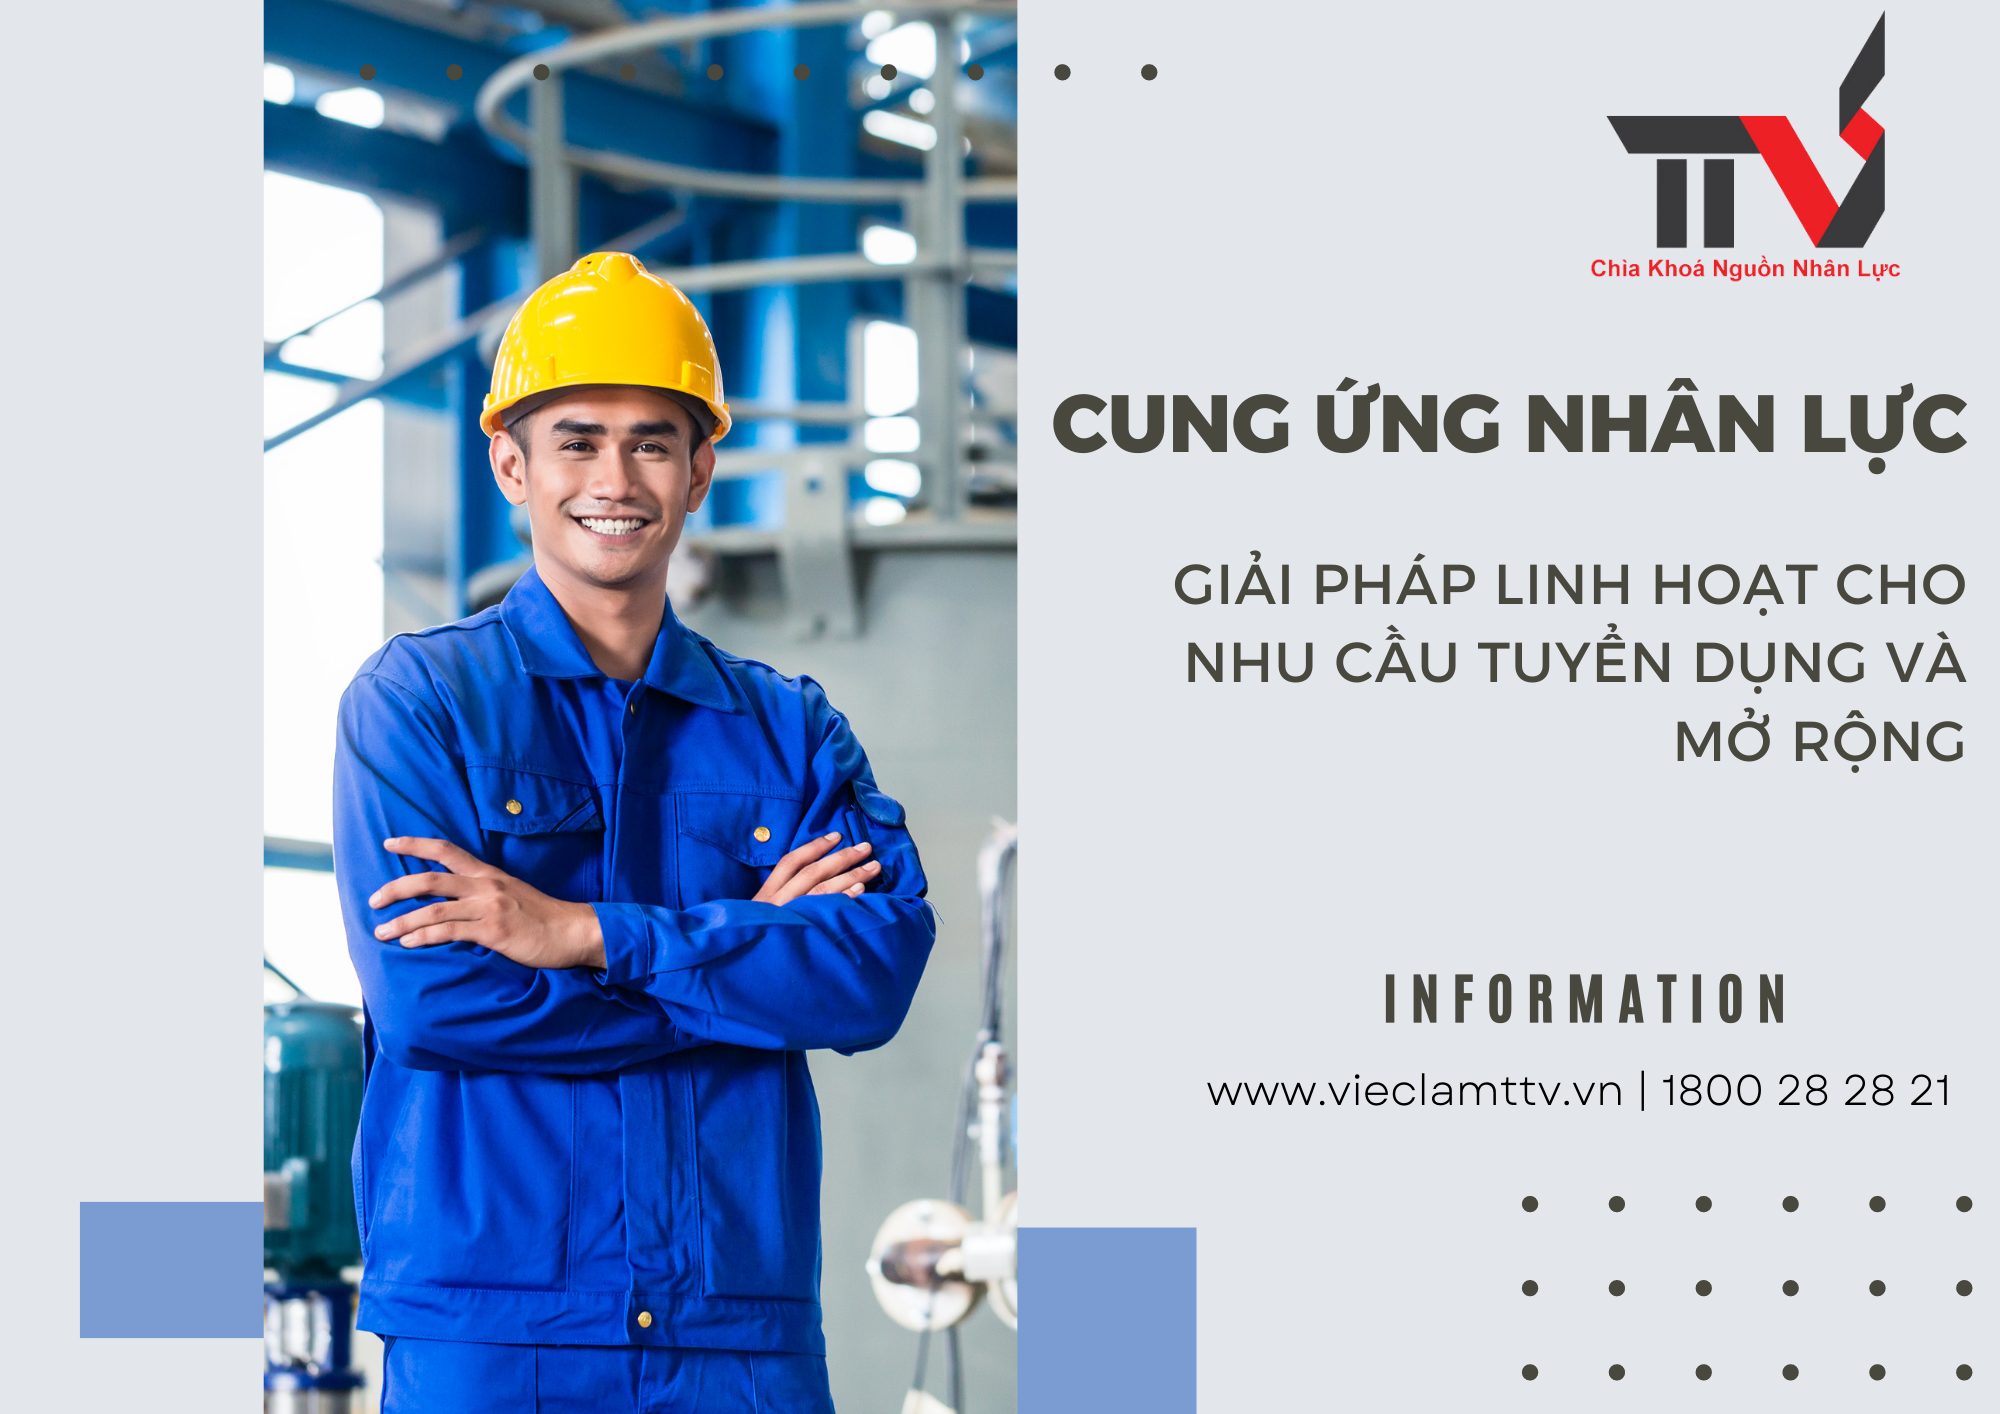 Cung ứng nhân lực: Giải pháp linh hoạt cho nhu cầu tuyển dụng và mở rộng tại khu vực Hồ Chí Minh, Bình Dương, Đồng Nai